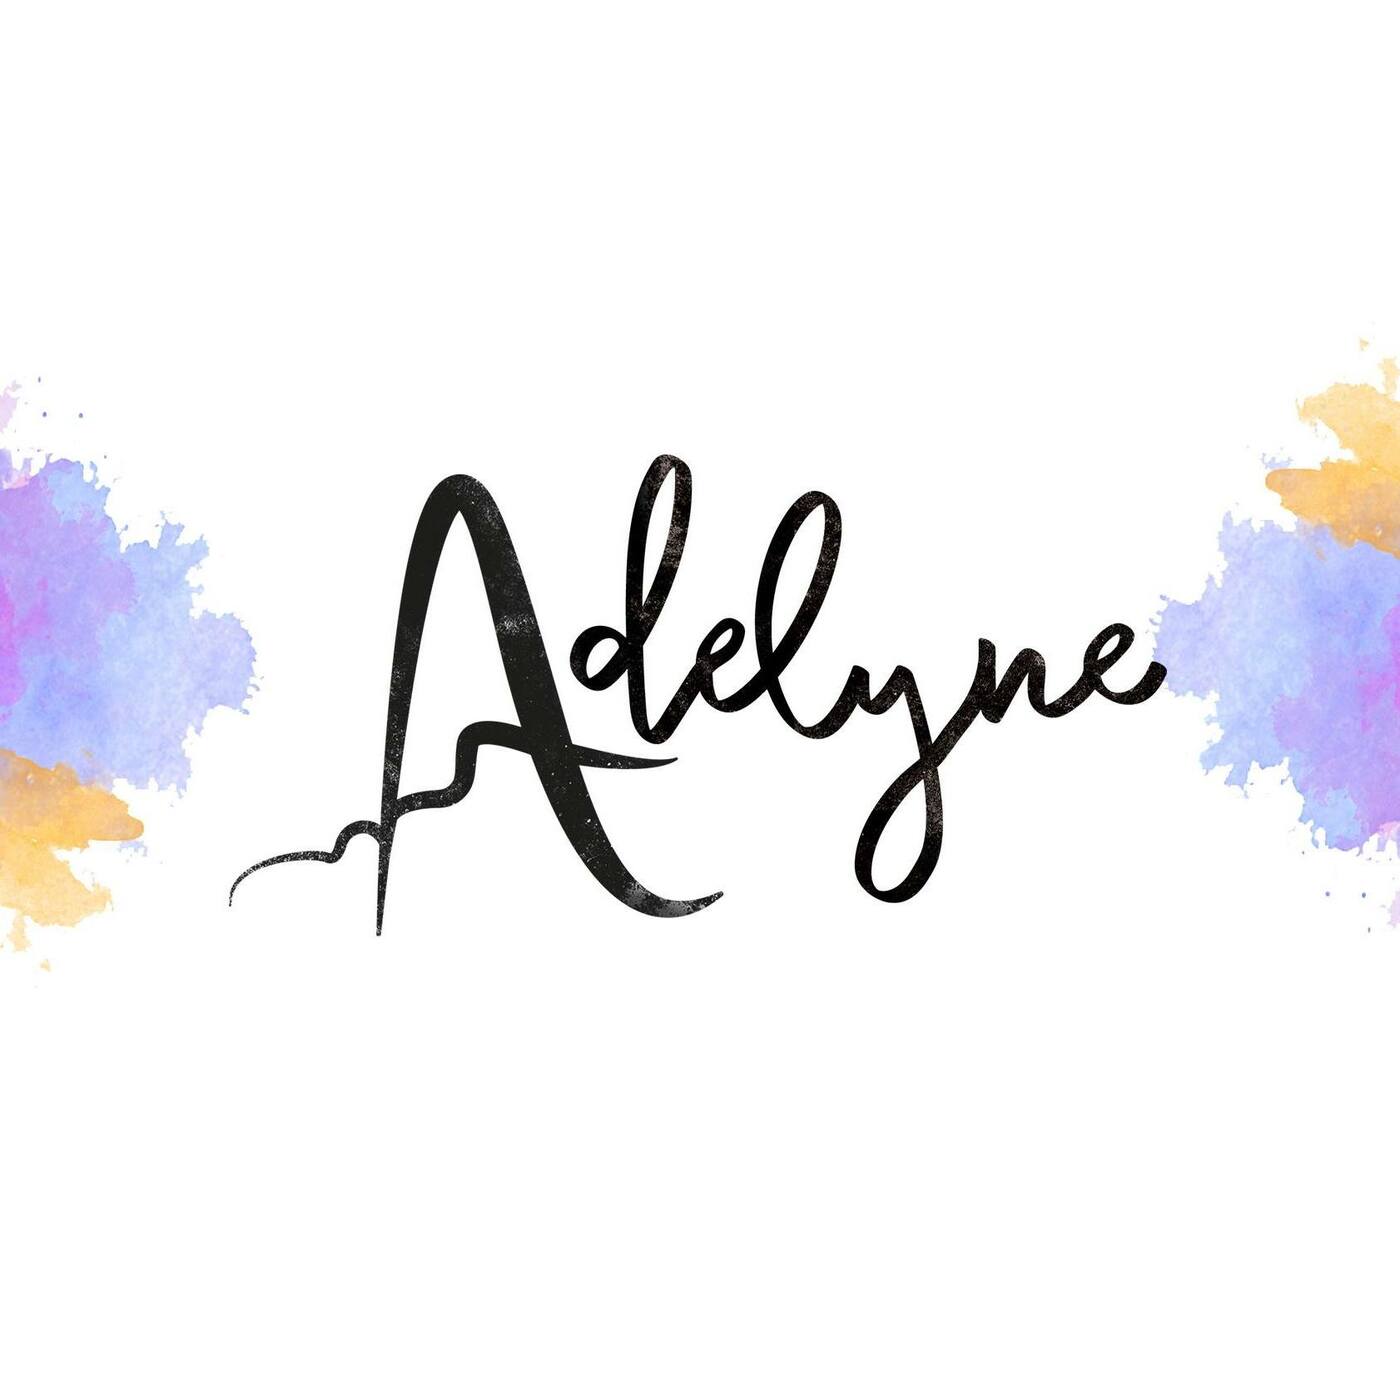 Adelyne | musica en valencià